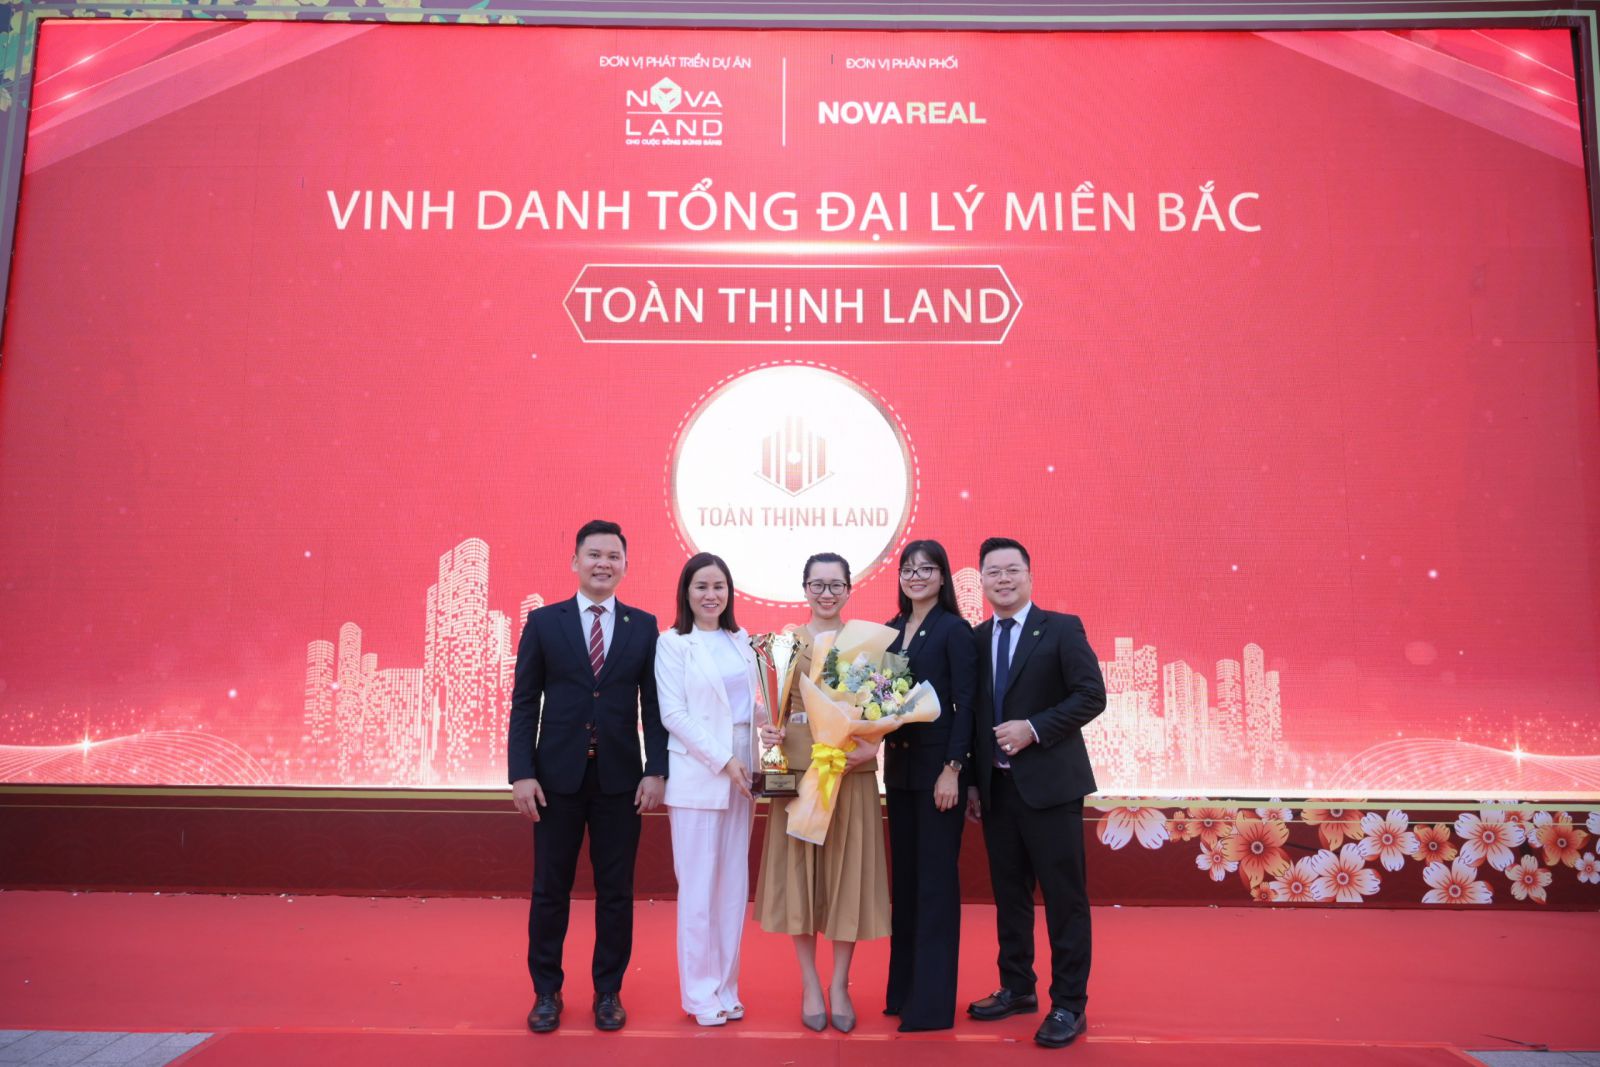 Toan-thinh-land-nhan-giai-thuong-hang-1-dai-ly-mien-bac-xuat-sac-nhat-novaland-group-2021